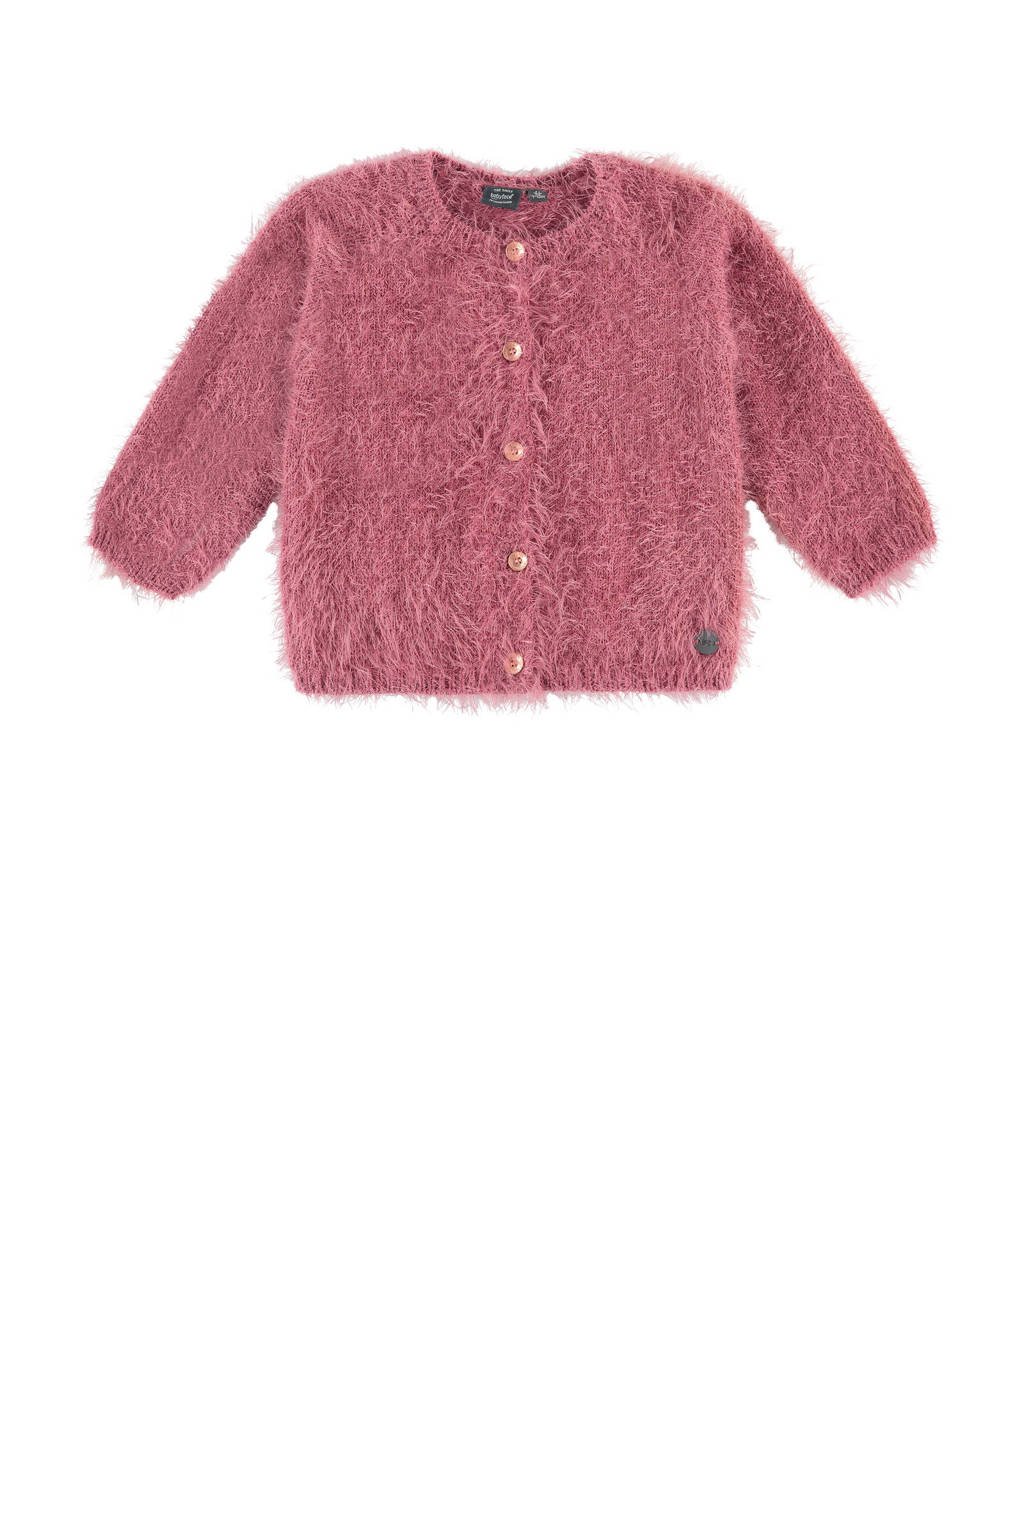 Roze meisjes Babyface vest van sweat materiaal met lange mouwen, ronde hals en knoopsluiting